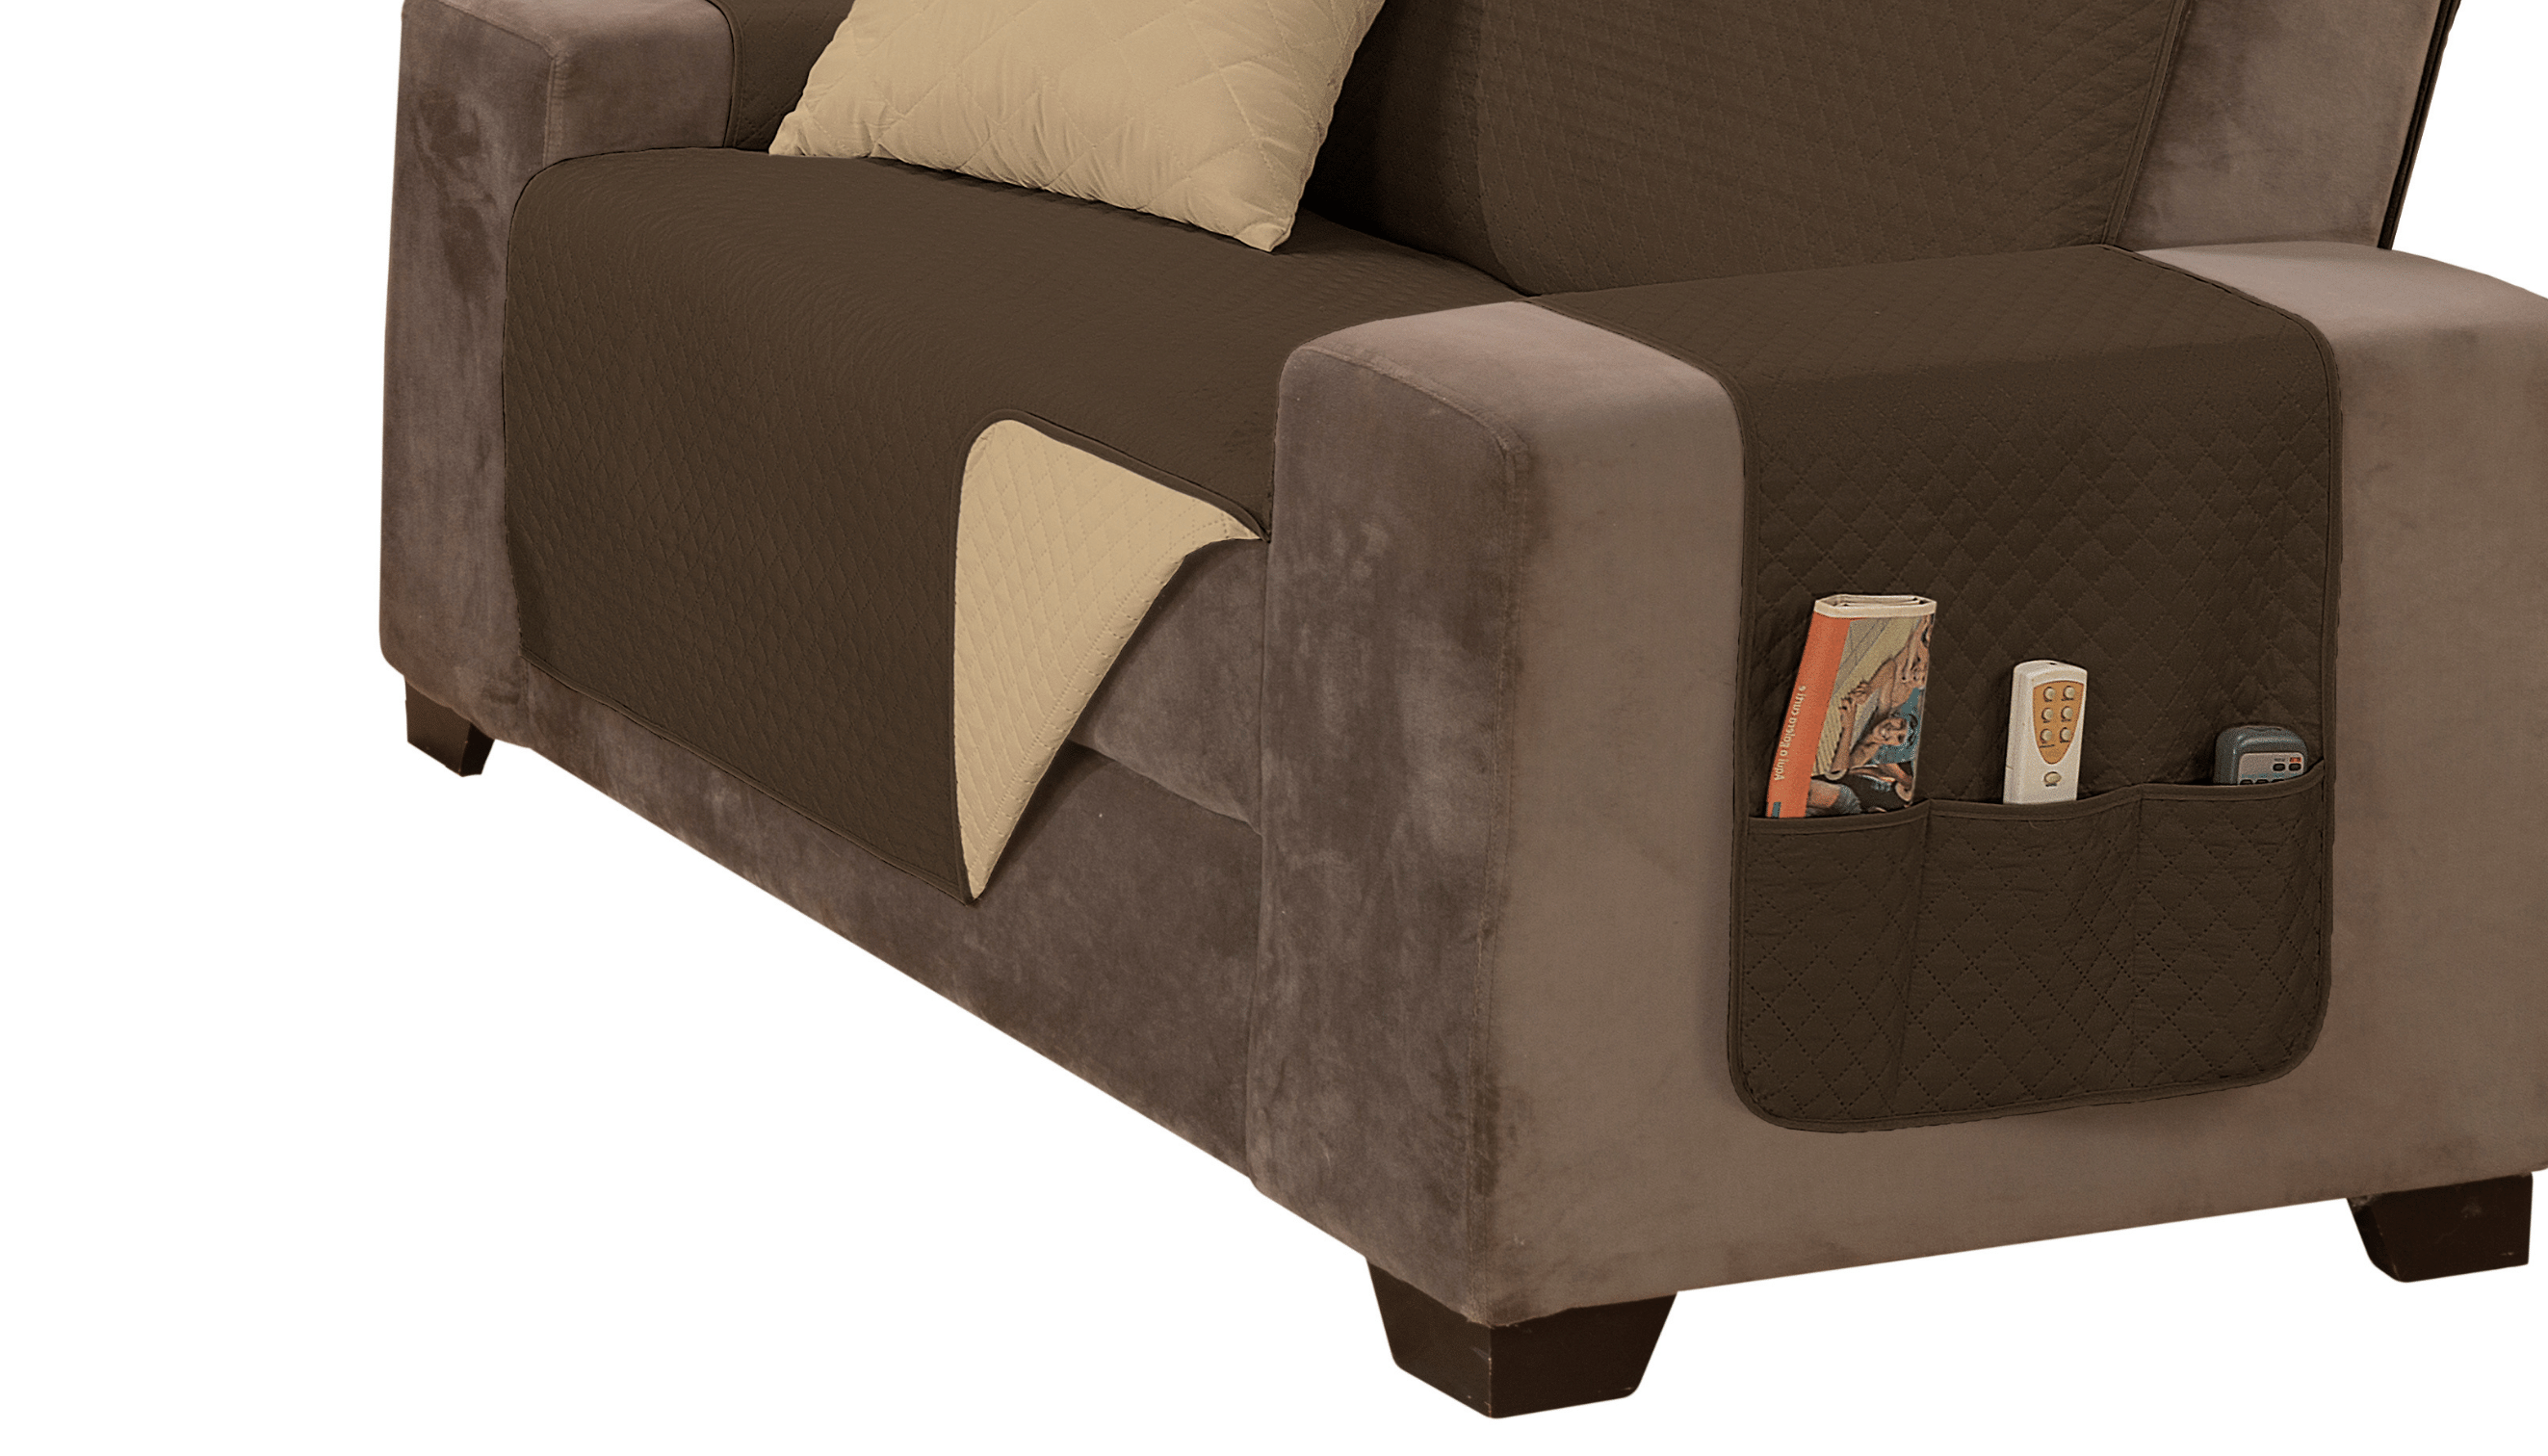 Capa sofá impermeavel ultrassonico tamanho padrão 2 lugares 1,1m marrom e caqui - 3